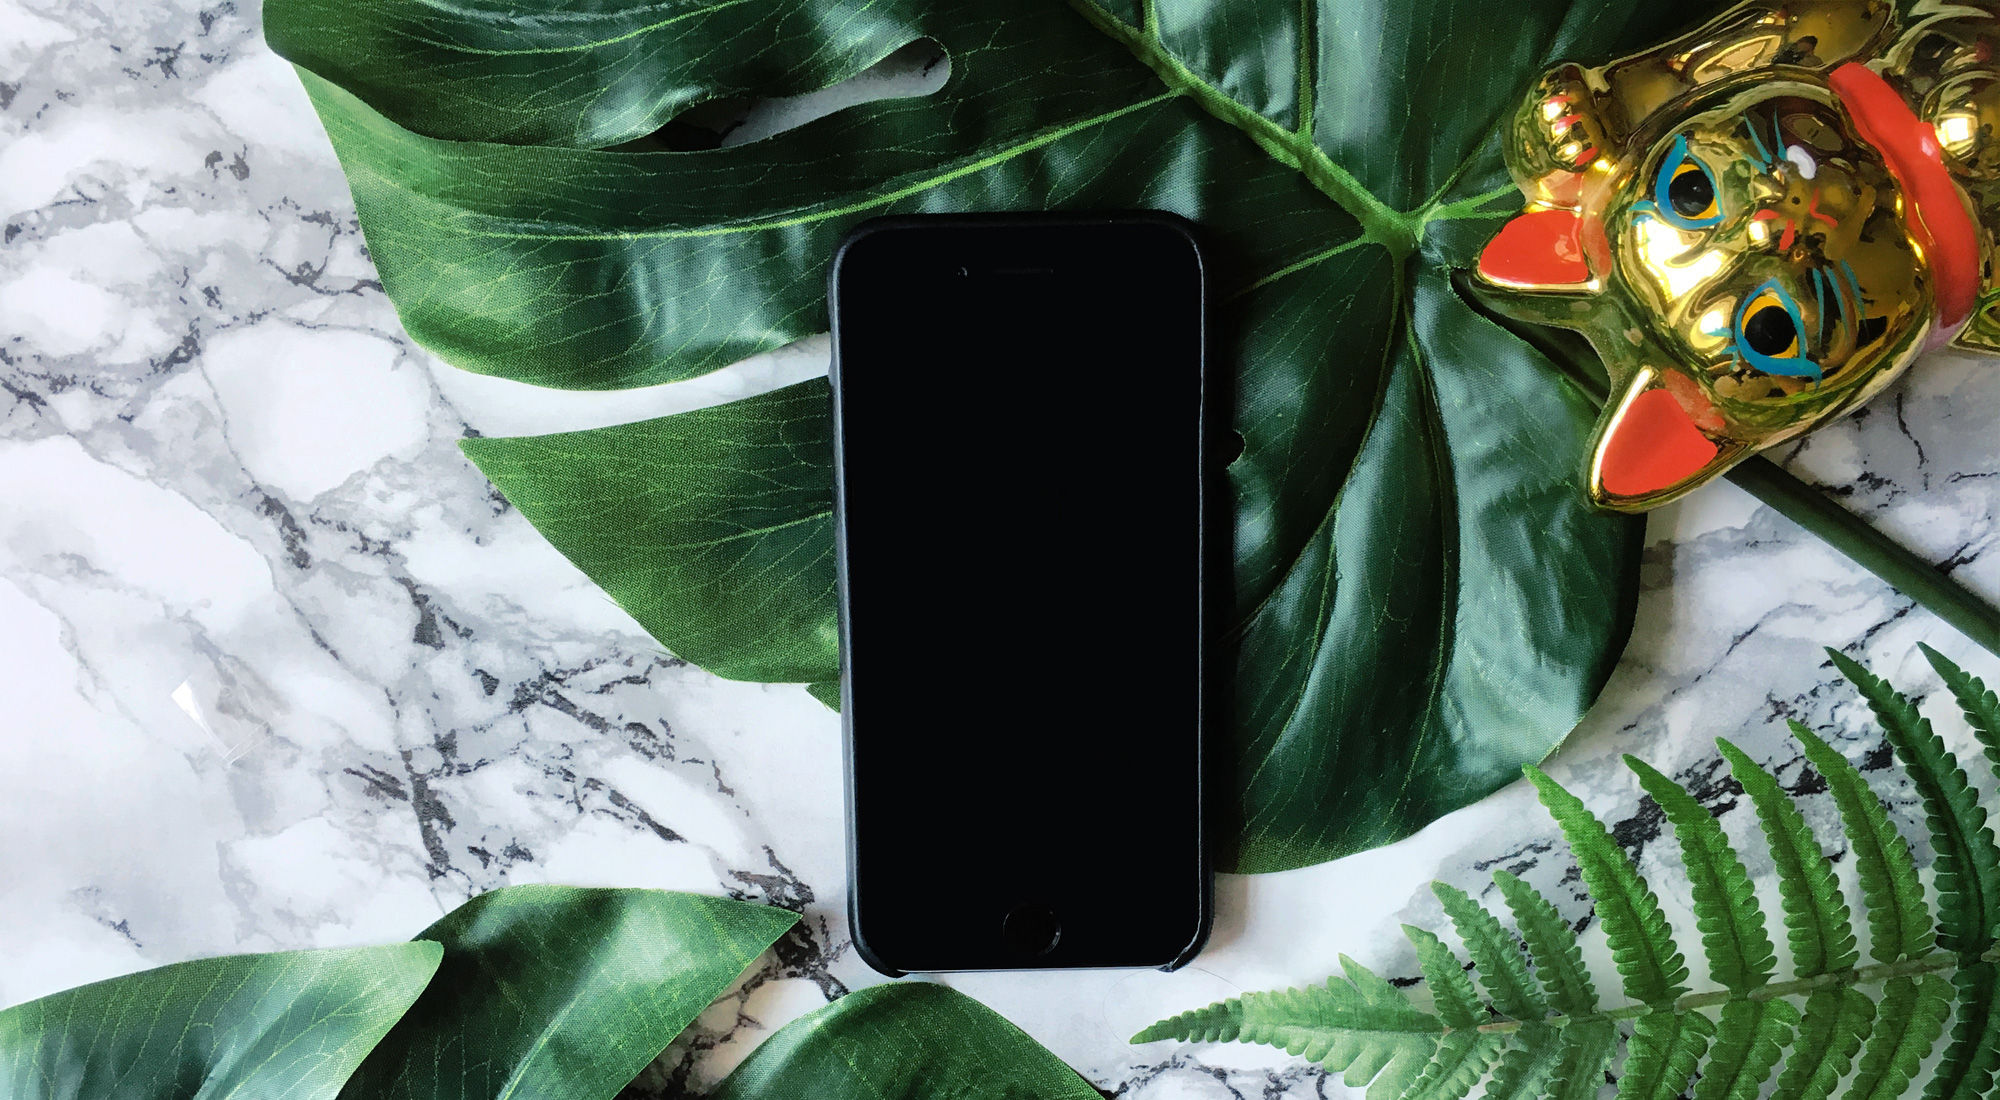 Bild eines iphone und einer Winkekatze auf Marmorhintergrund mit Monstera-Pflanze